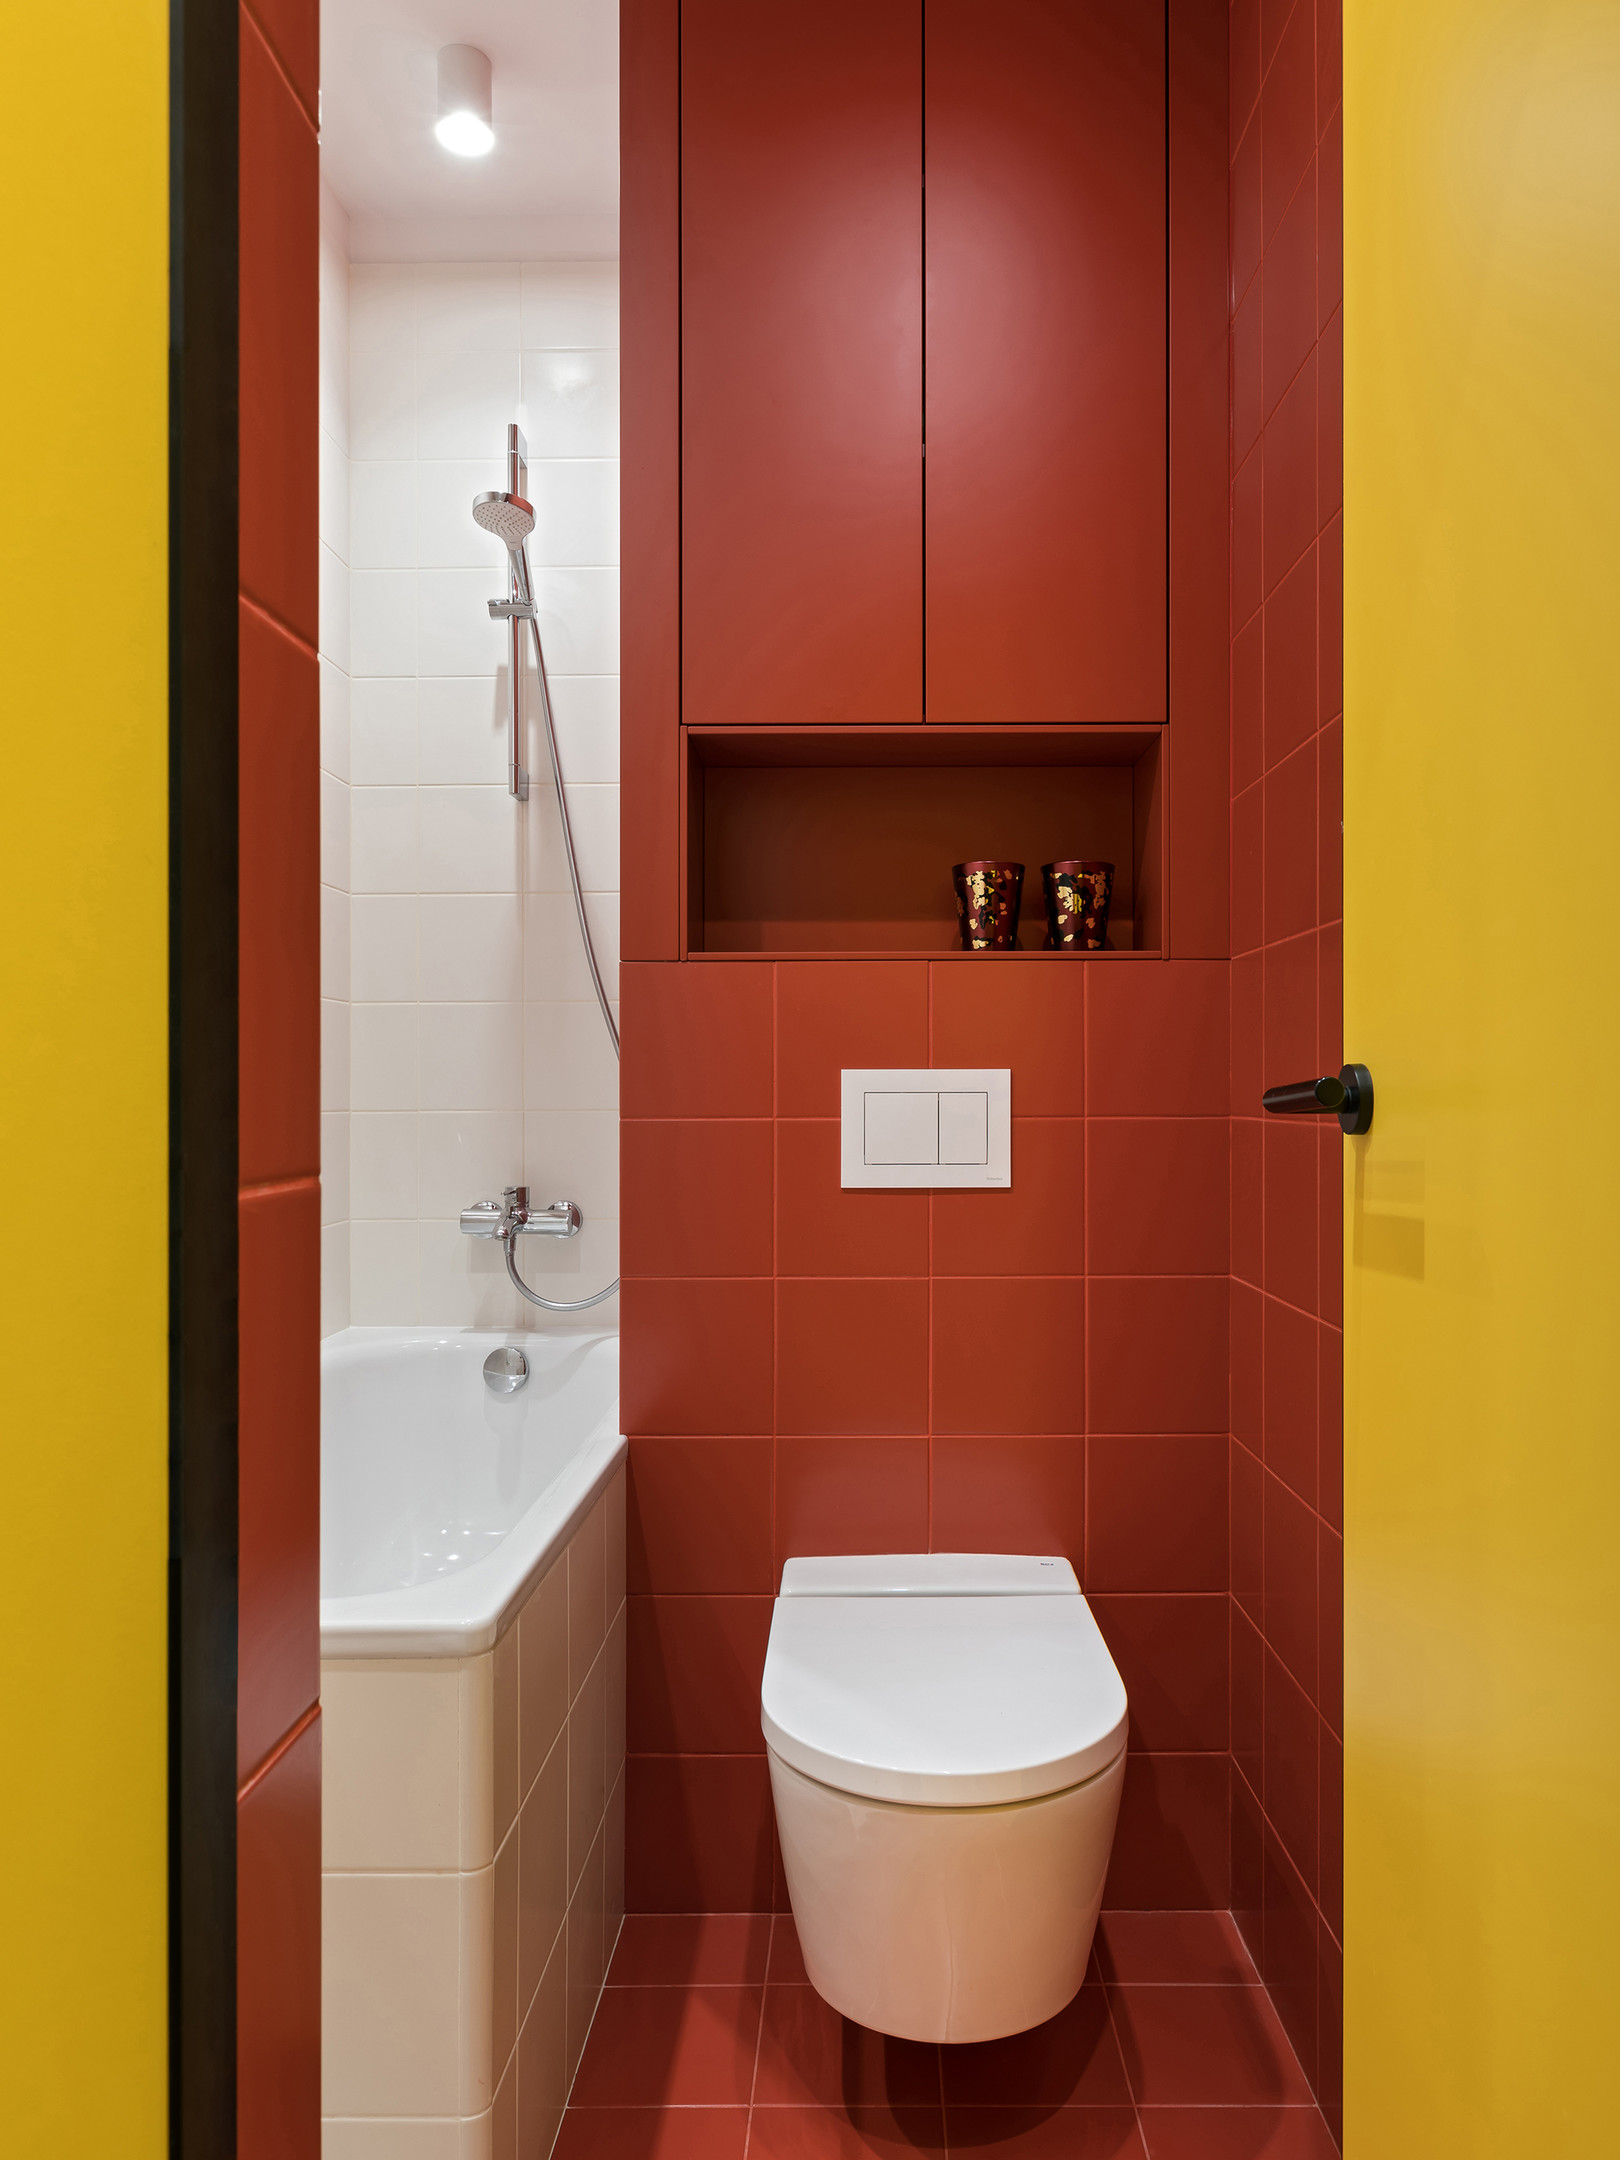 Gạch ô vuông cùng màu sơn đỏ mận được dùng để ốp lát tường và sàn nhà vệ sinh. Riêng toilet và bồn tắm nằm chọn vật liệu sứ màu trắng cho cảm giác sạch sẽ, thanh lịch, trung hoà sắc đỏ có phần quá nổi bật. Chỉ trong một không gian siêu nhỏ vài mét vuông nhưng công trình vệ sinh thực sự lôi cuốn người nhìn chỉ bằng màu sắc!